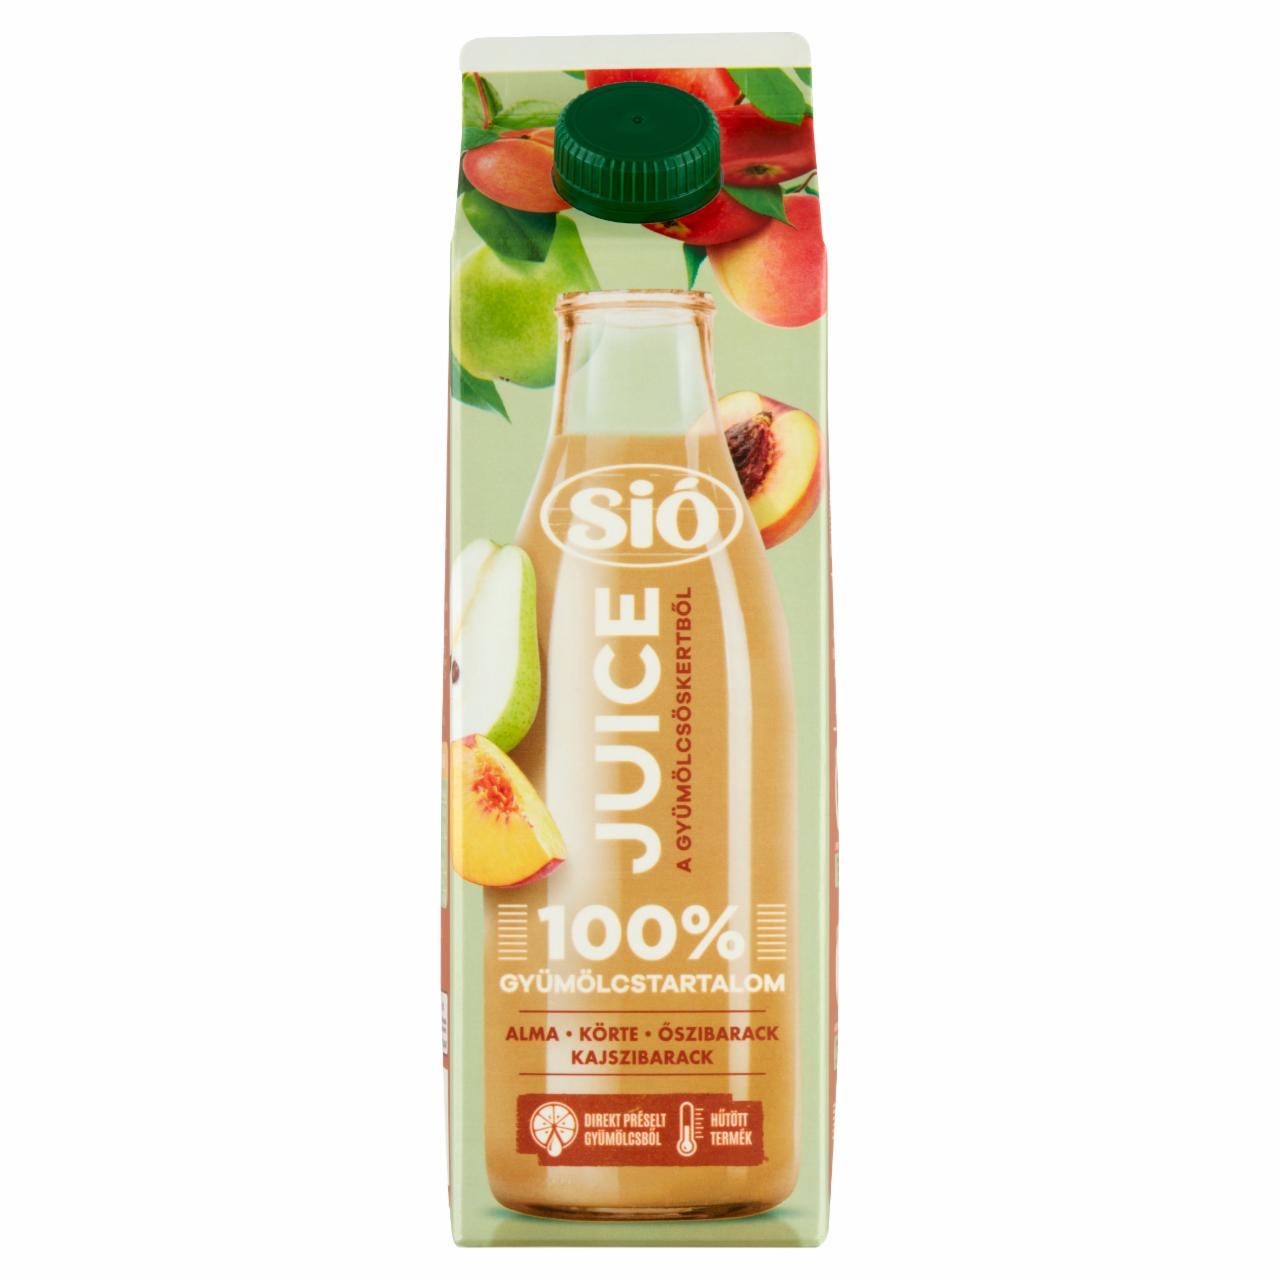 Képek - Sió 100% alma-körte-őszibarack-kajszibarack juice 1 l